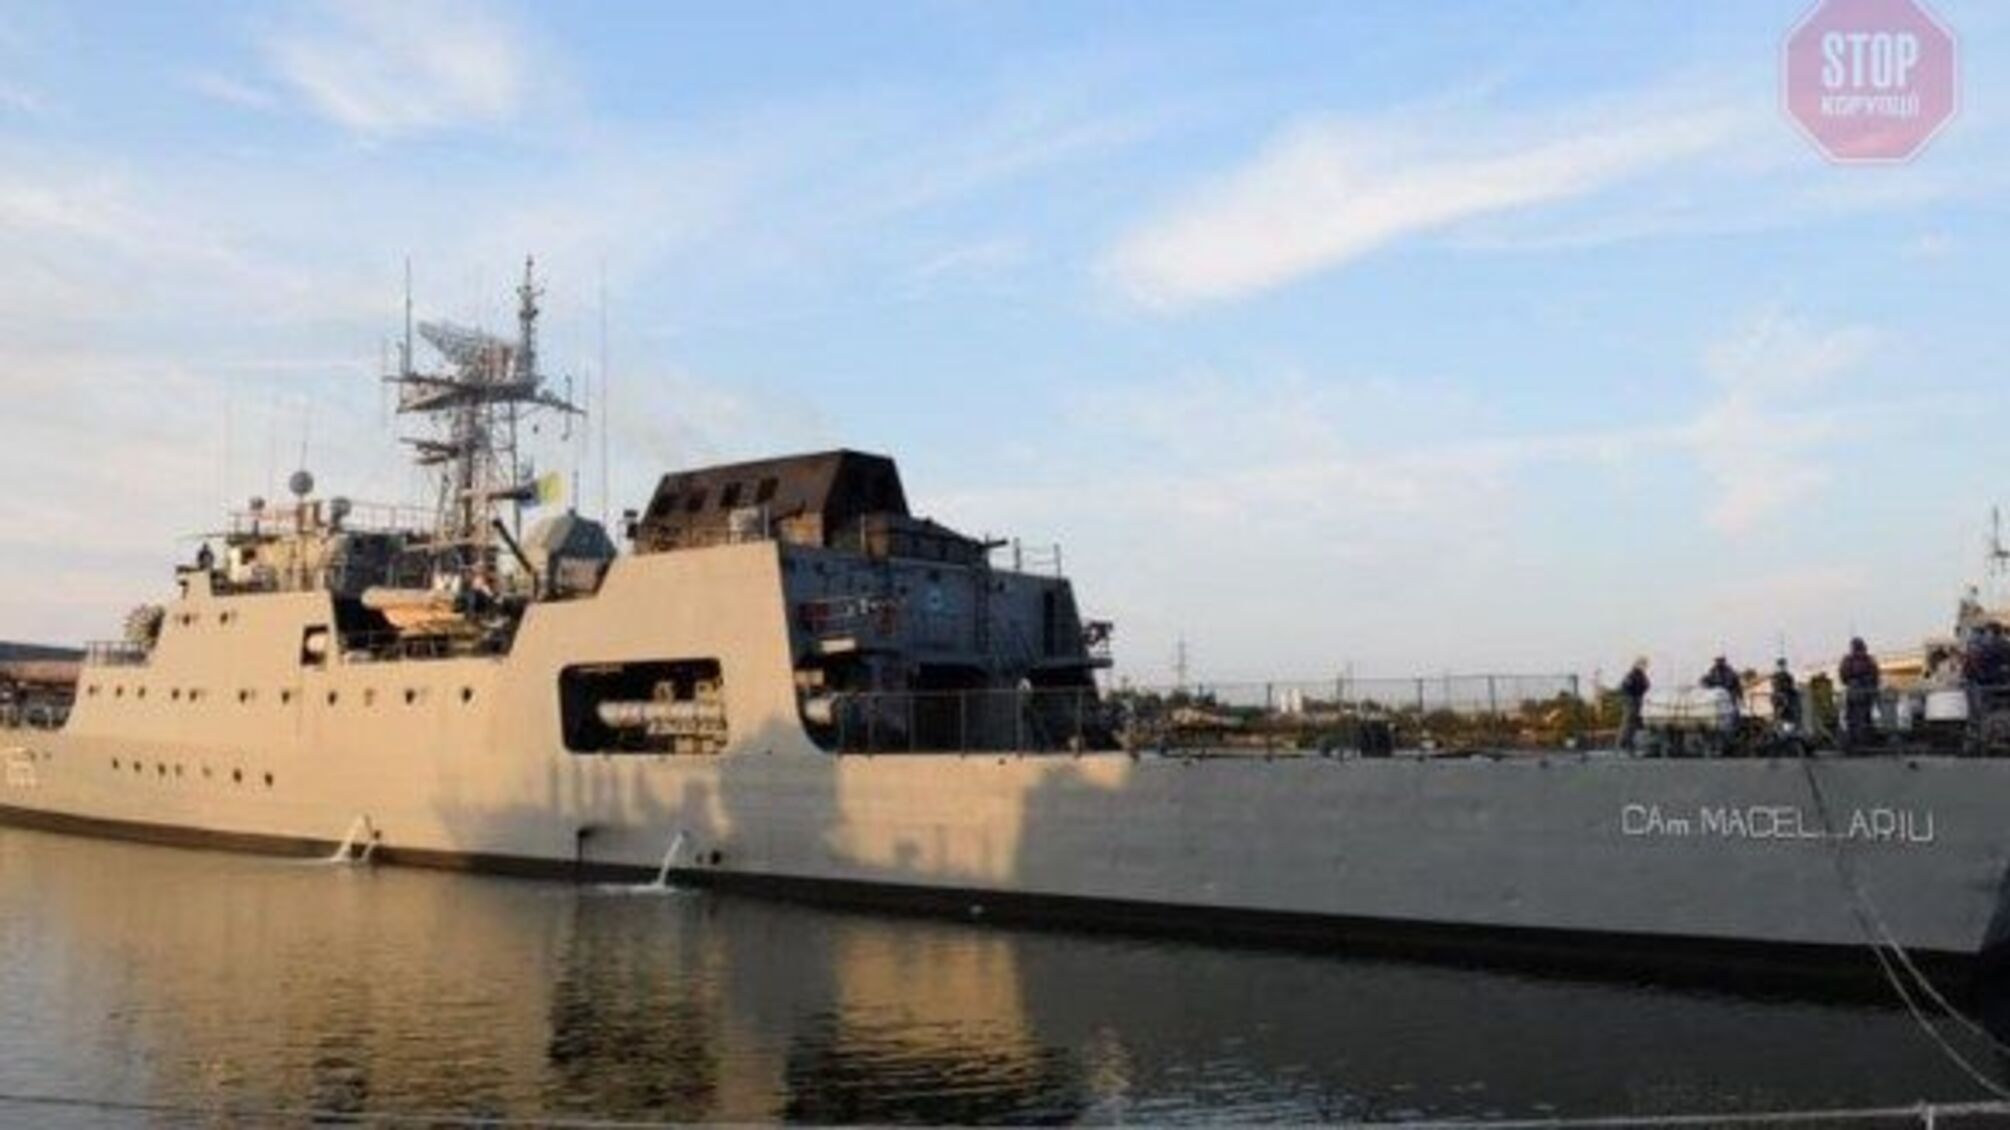 Для участия в морском параде в Одессу направляется корабль ВМС страны НАТО